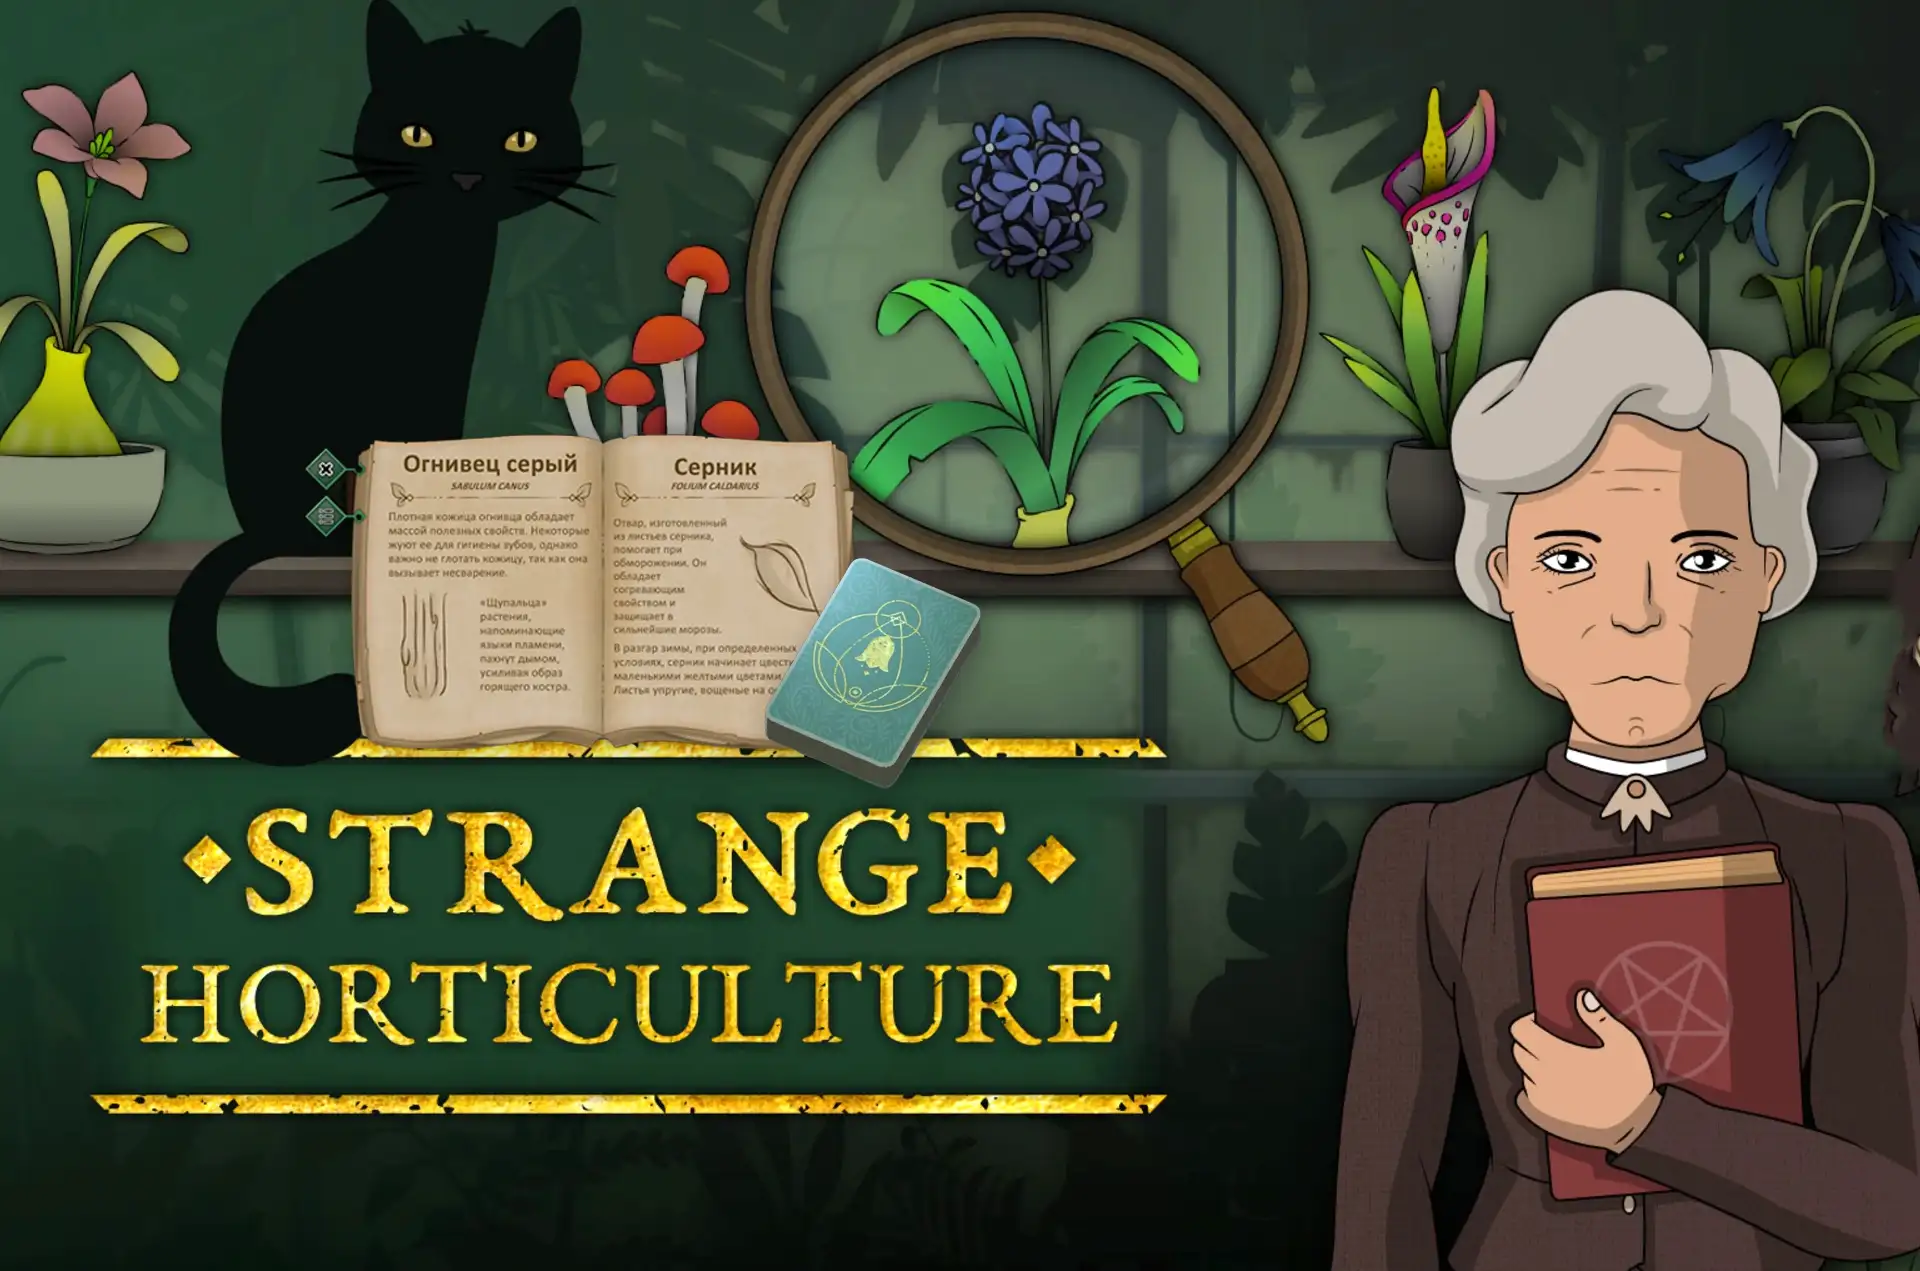 Presenting Strange Horticulture